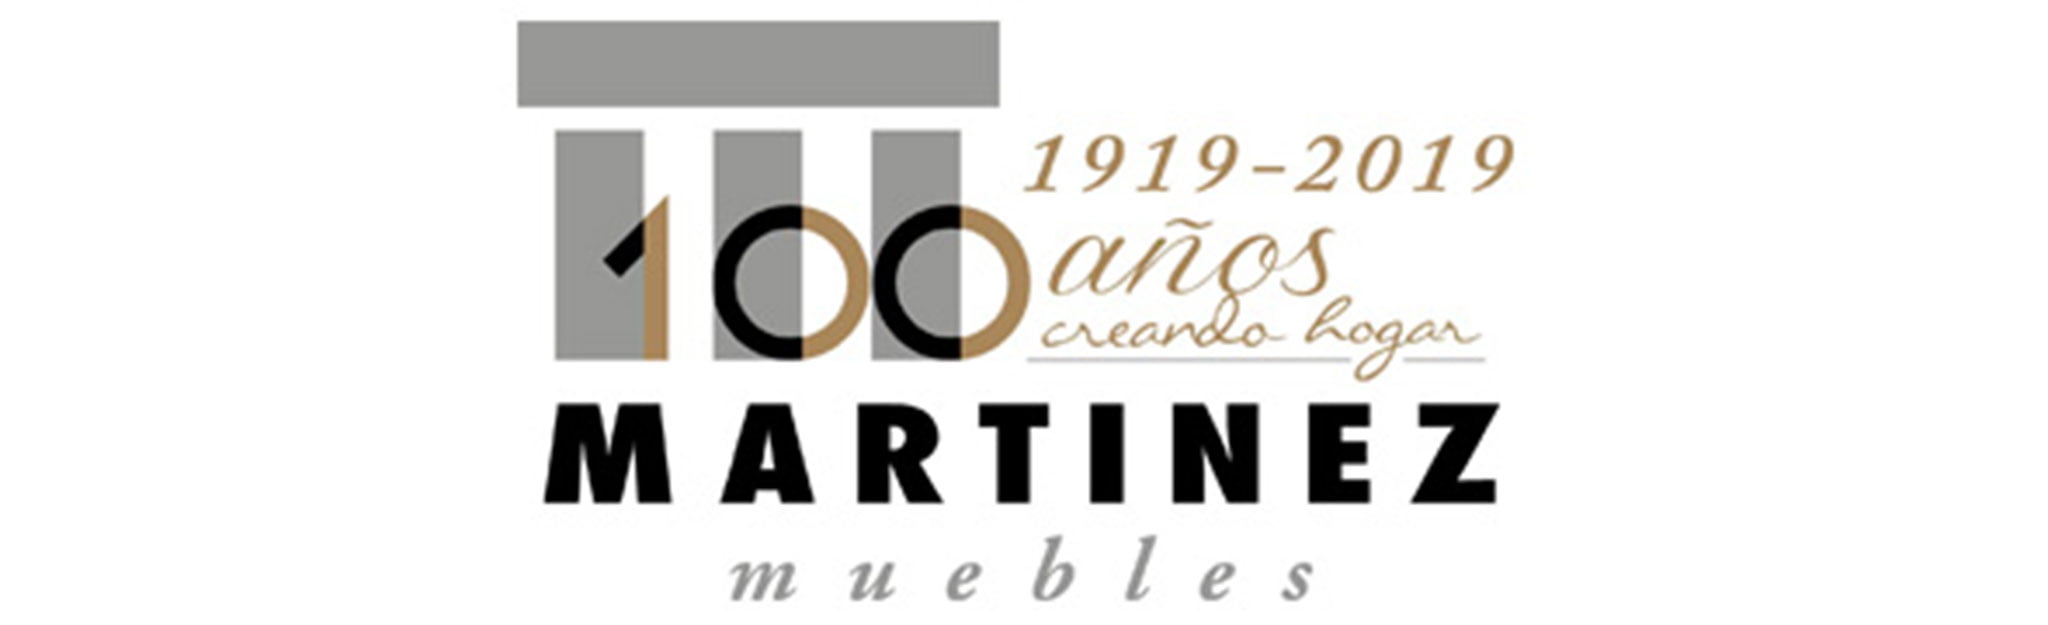 Logotipo de Muebles Martínez